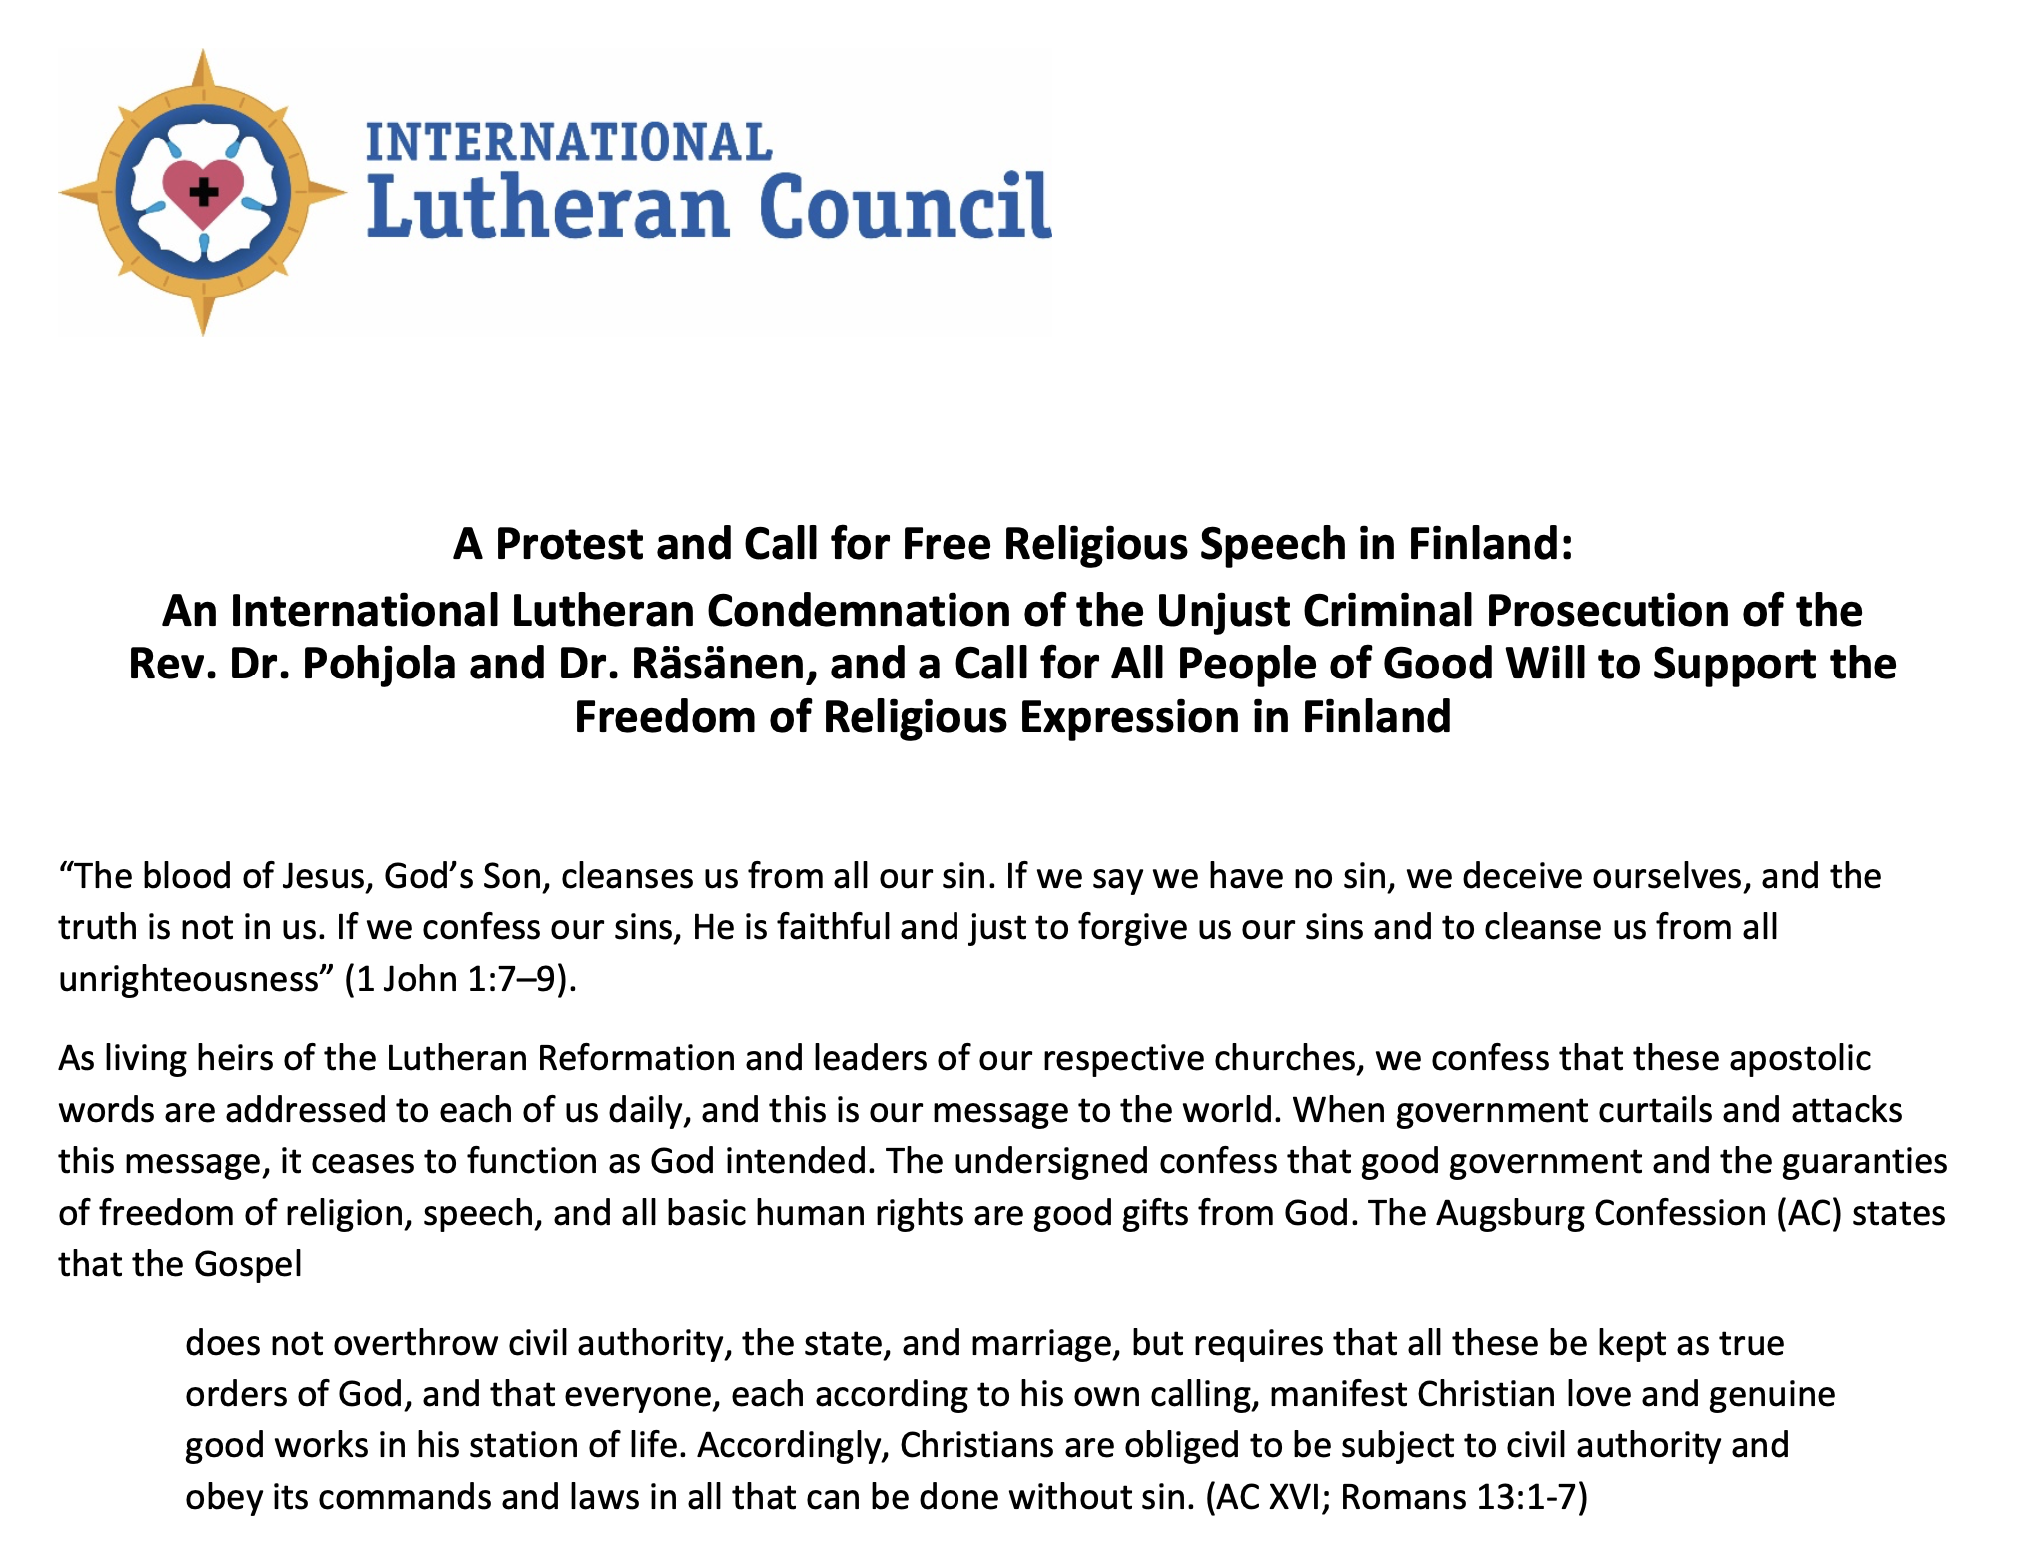 Brev fra International Lutheran Council om trosfrihet i Finland. Rådet fordømmer behandlingen av Dr. Päivi Räsänen og Dr. Juhana Pohjola.